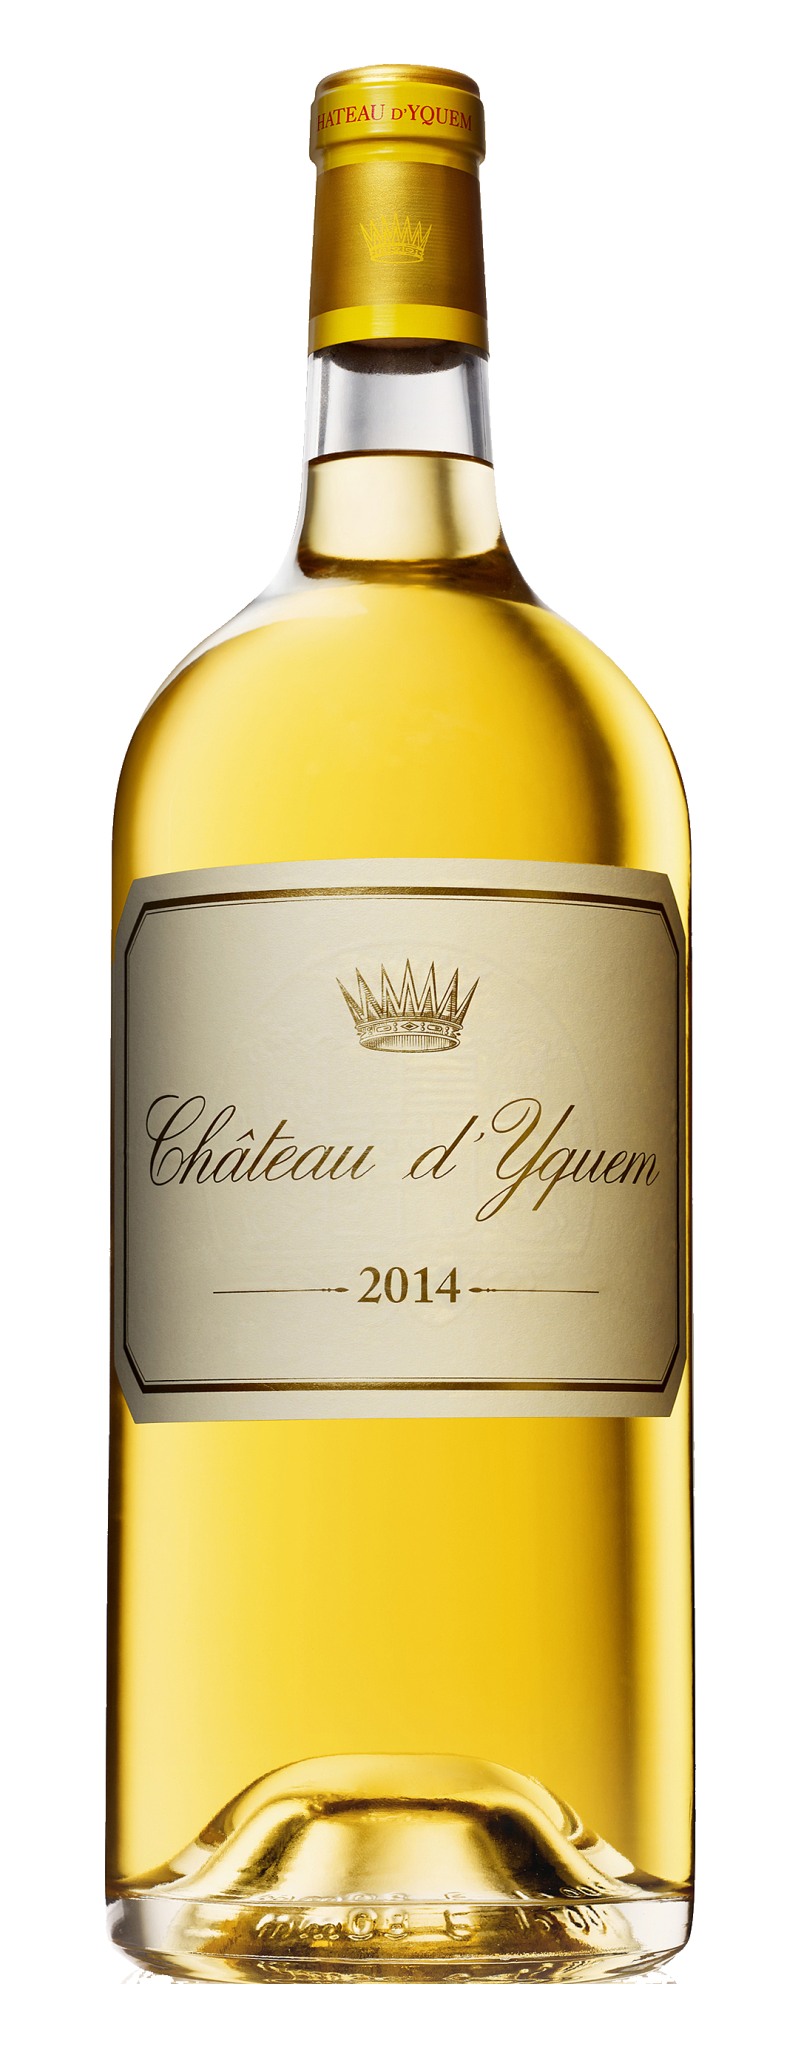 Y D'Yquem 2014 - Sauternes  - 750ml